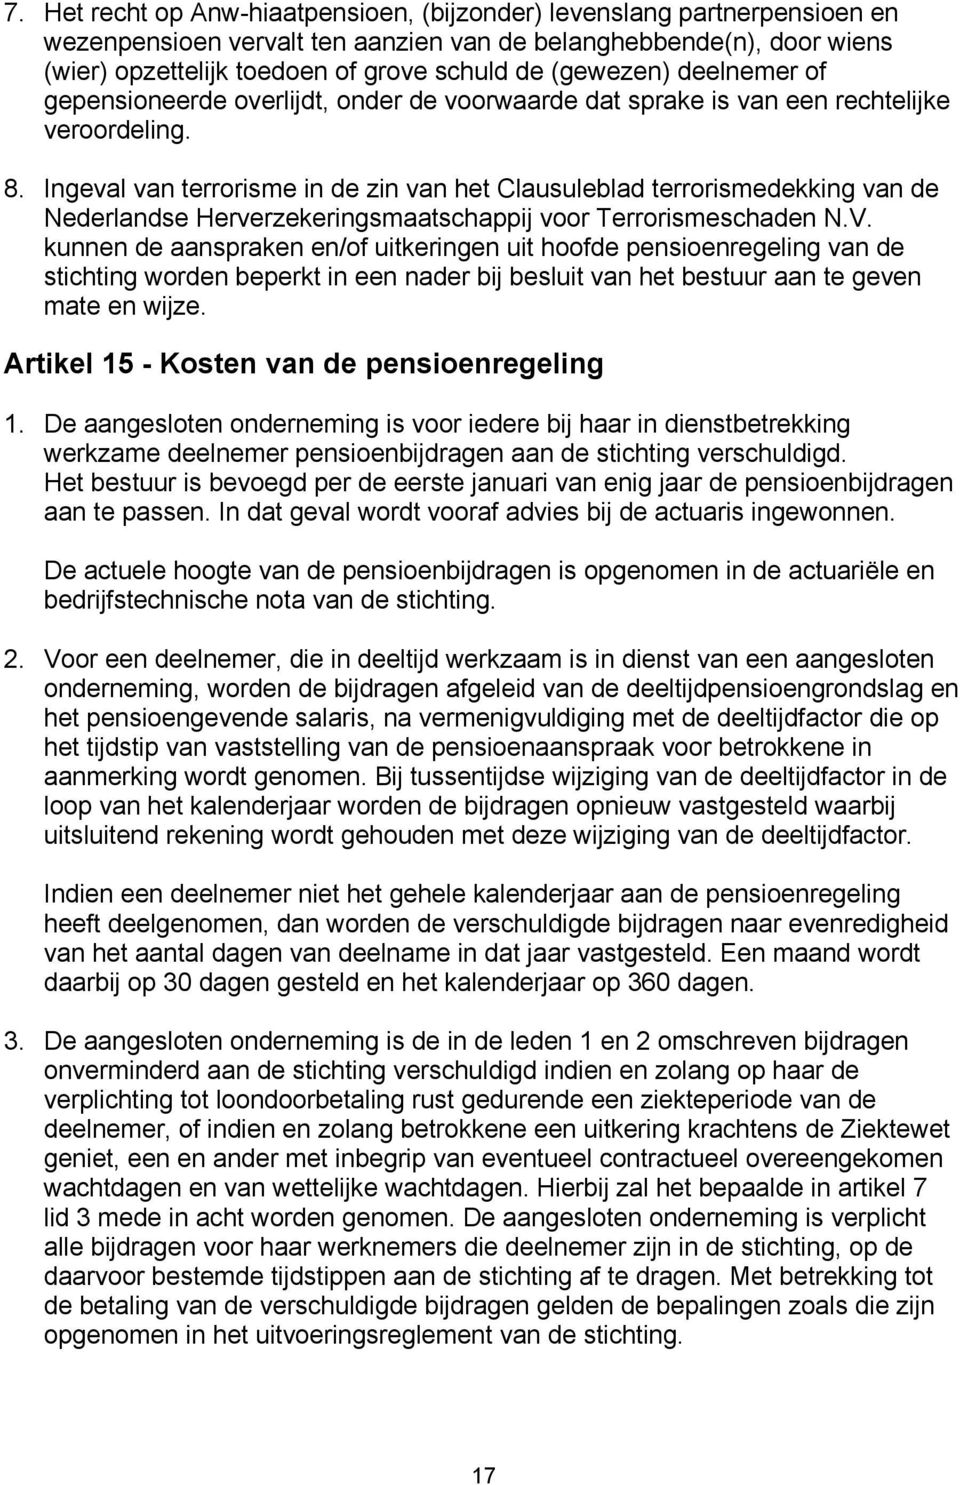 Ingeval van terrorisme in de zin van het Clausuleblad terrorismedekking van de Nederlandse Herverzekeringsmaatschappij voor Terrorismeschaden N.V.